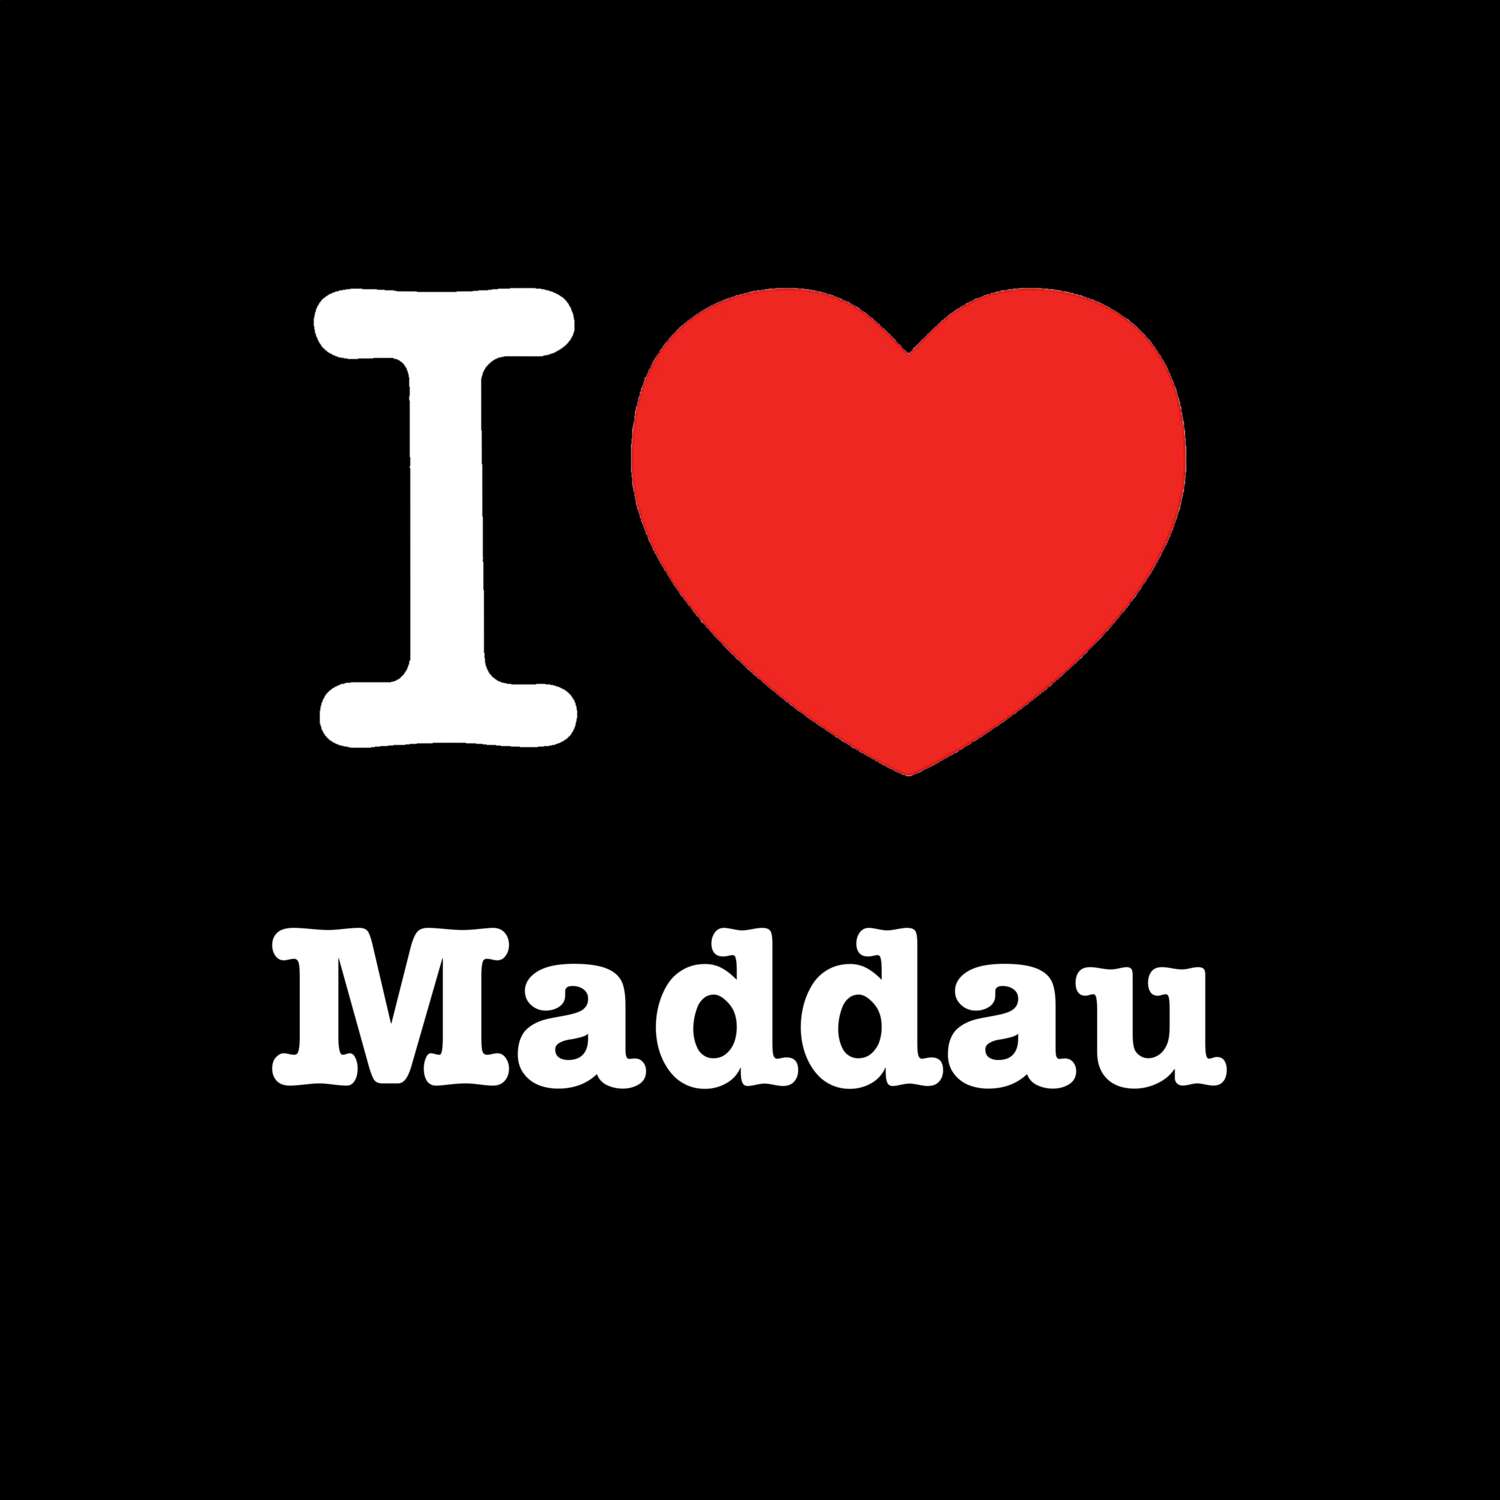 Maddau T-Shirt »I love«